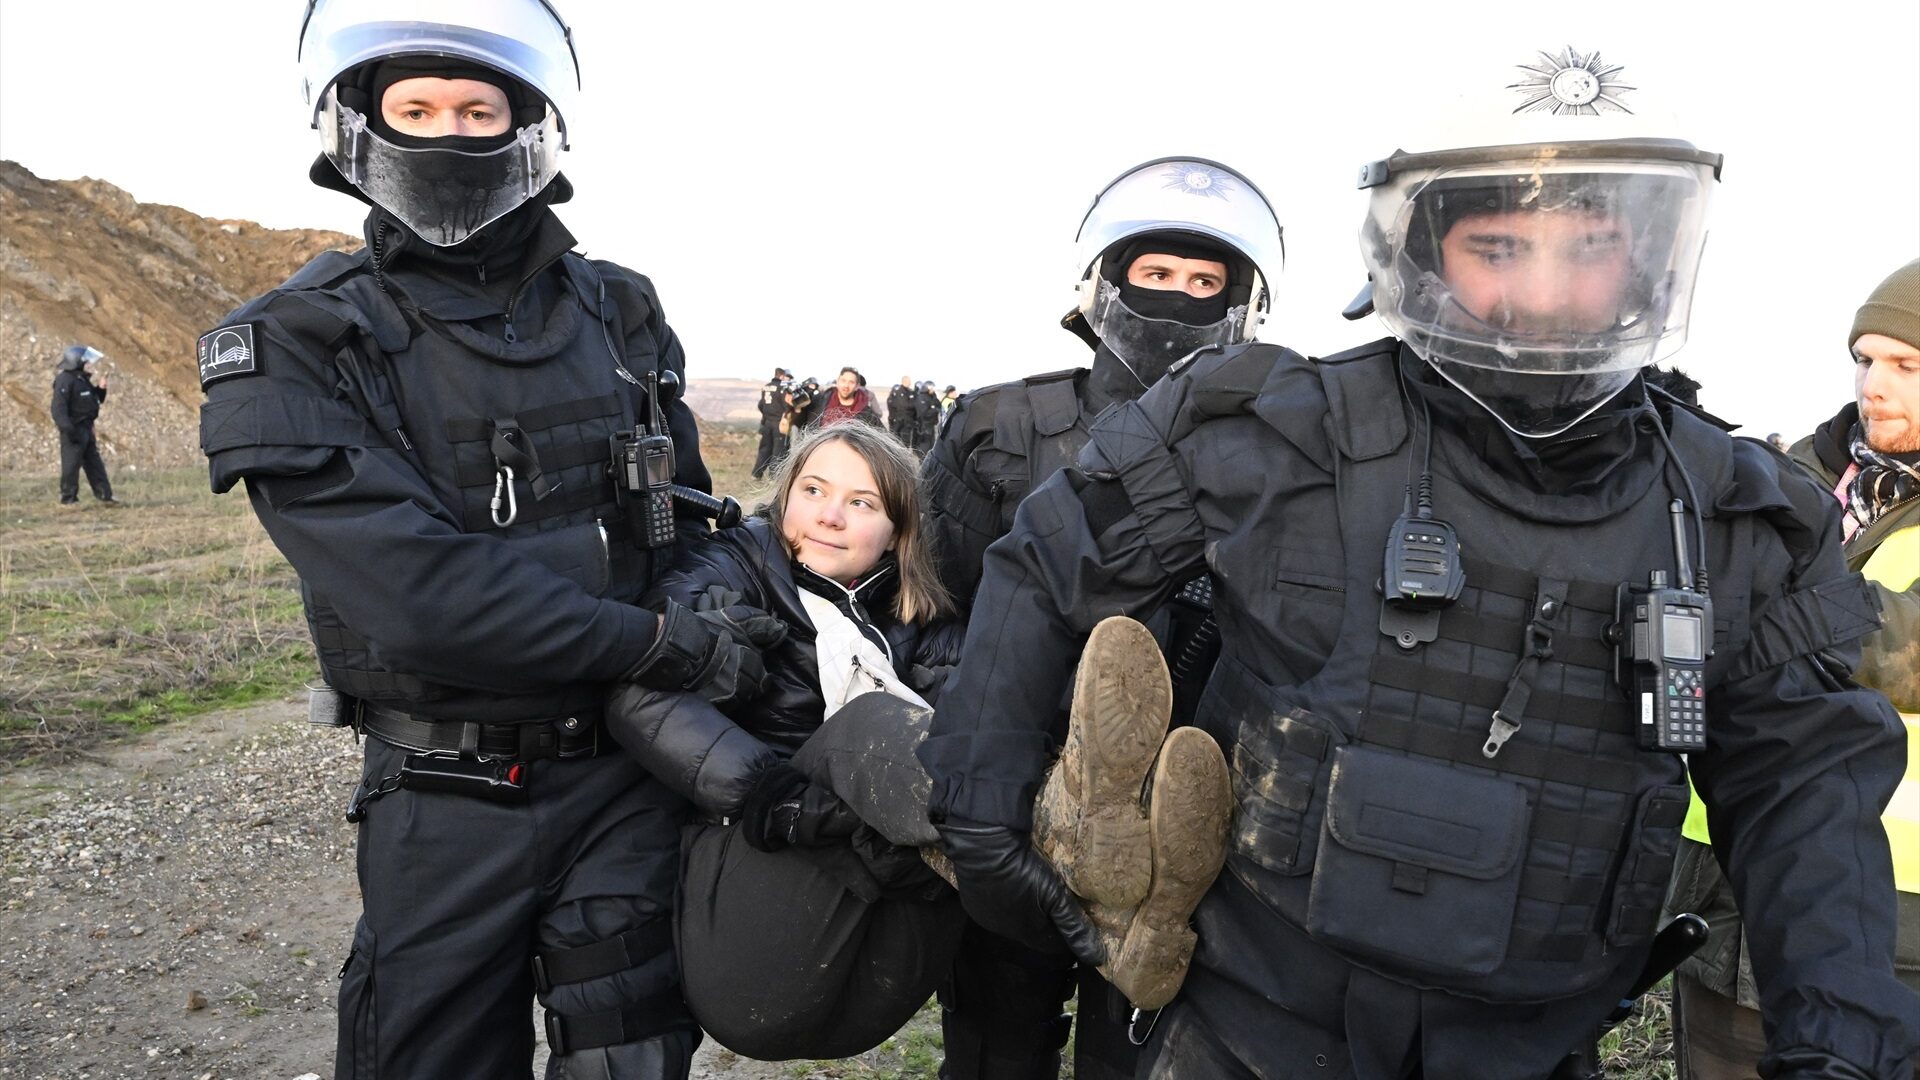 La policía detiene a Greta Thunberg en una manifestación en Alemania